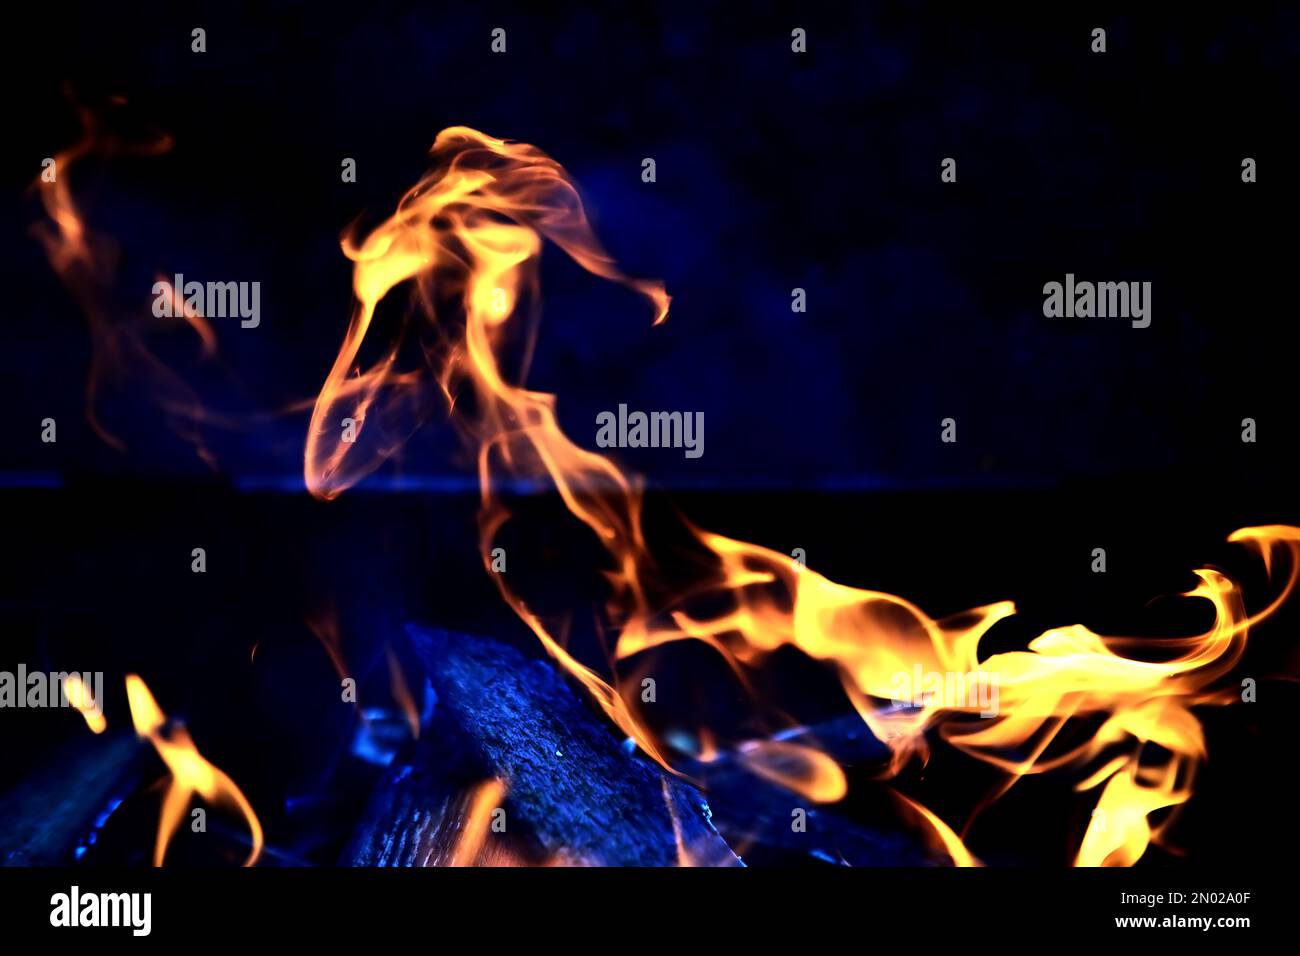 Fond de la flamme dans le four. Langues de feu dans une cheminée en brique. Texture du feu. Banque D'Images